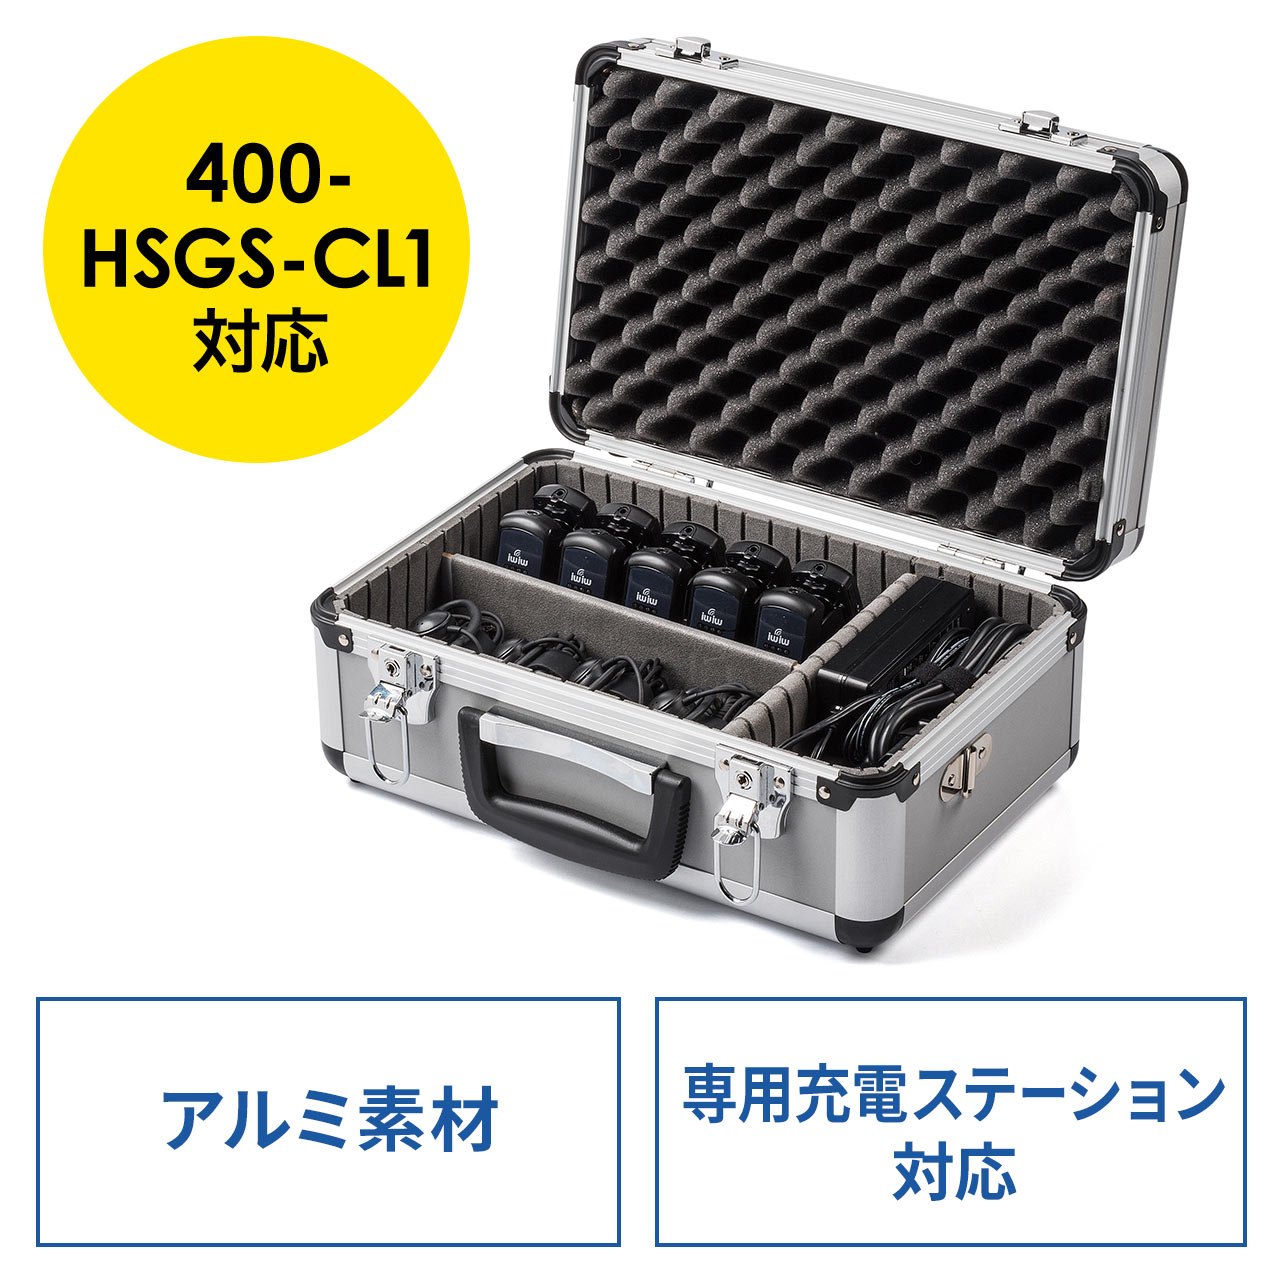 400-HSGS001用収納ケース ワイヤレスガイドシステム収納ケース キャリングケース アルミケース 鍵付 ショルダーベルト付  LINEショッピング